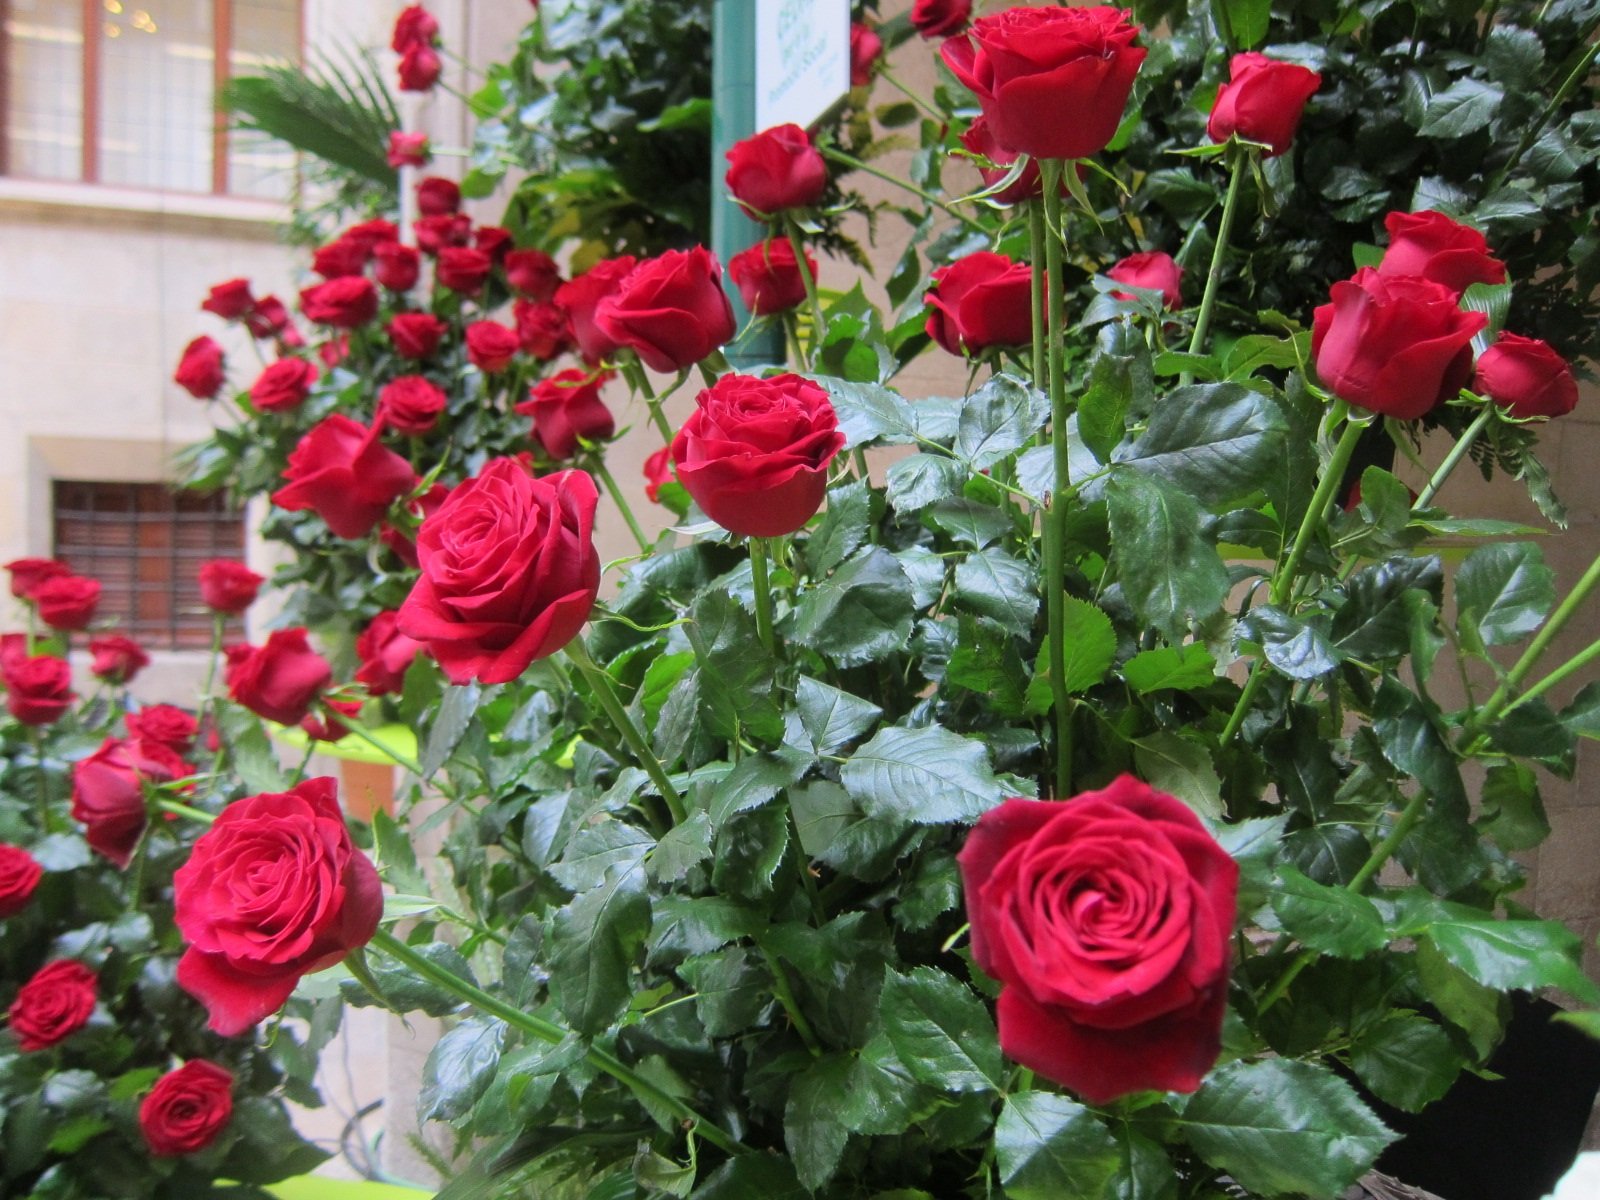 El Gremi de Floristes enviarà roses a domicili per Sant Jordi